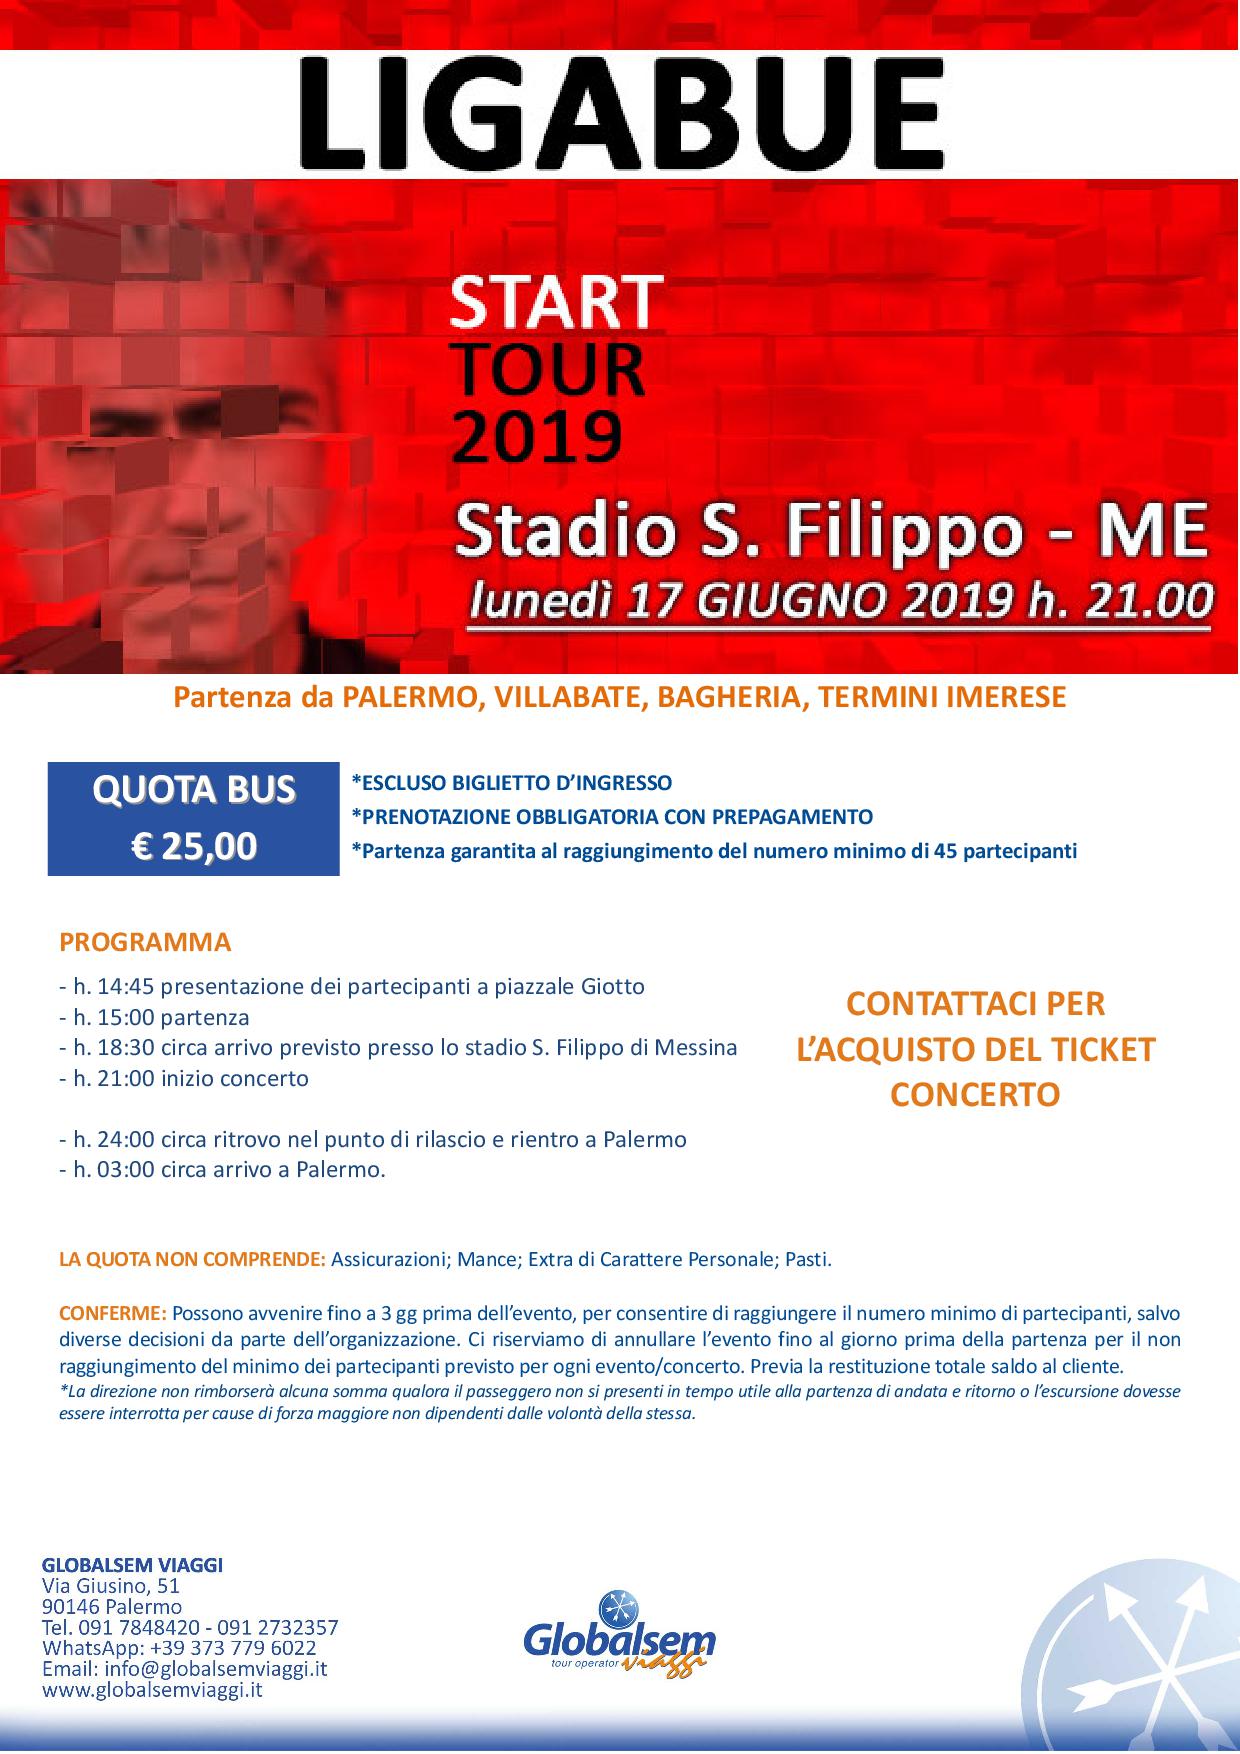 LIGABUE in CONCERTO giugno 2019 Stadio S. FIlippo Messina